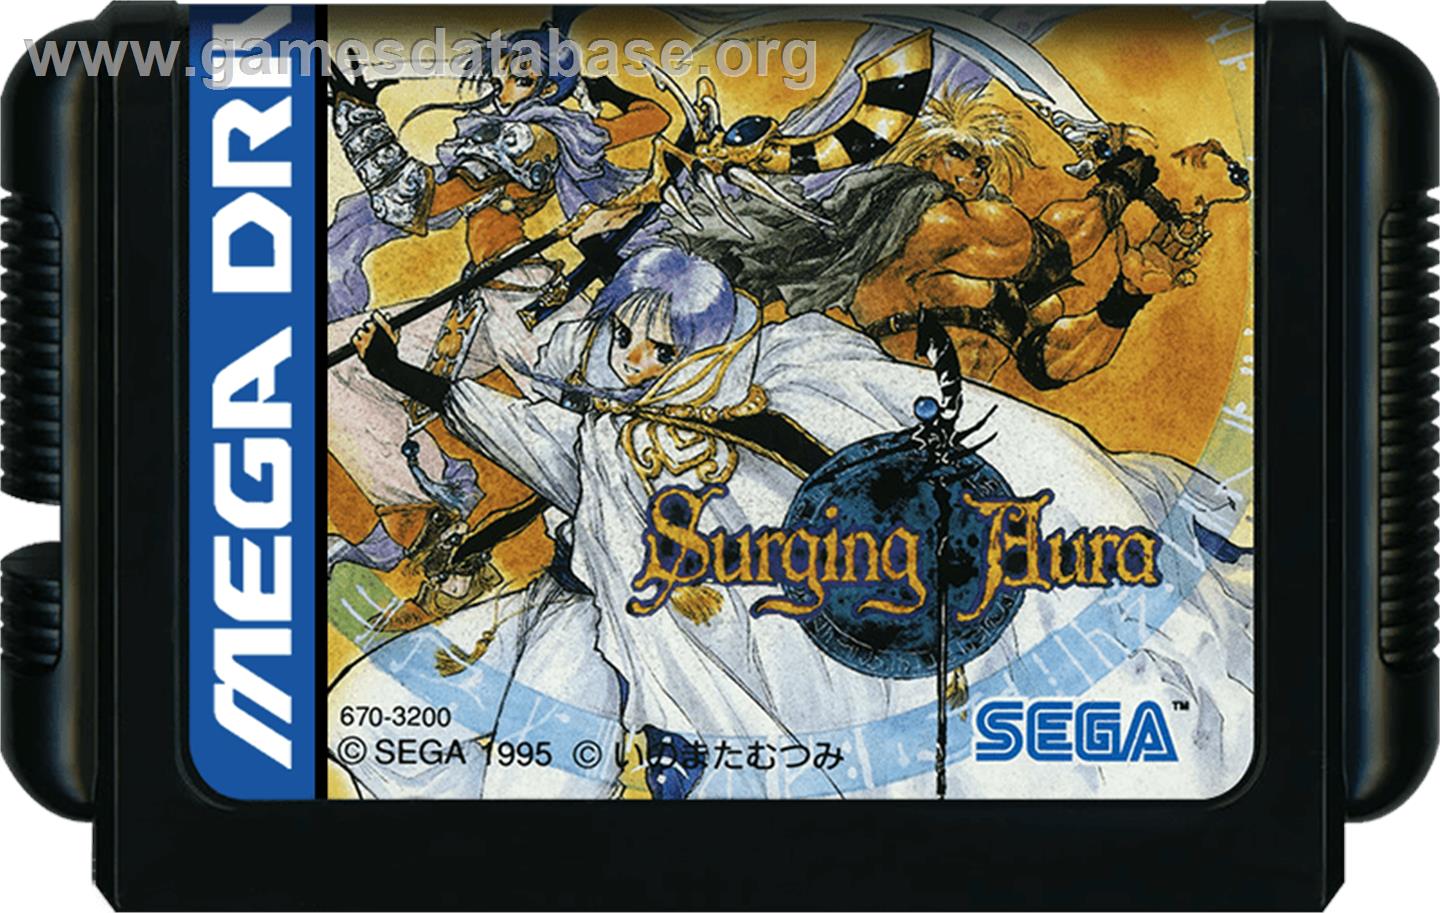 Surging Aura - Sega Genesis - Artwork - Cartridge